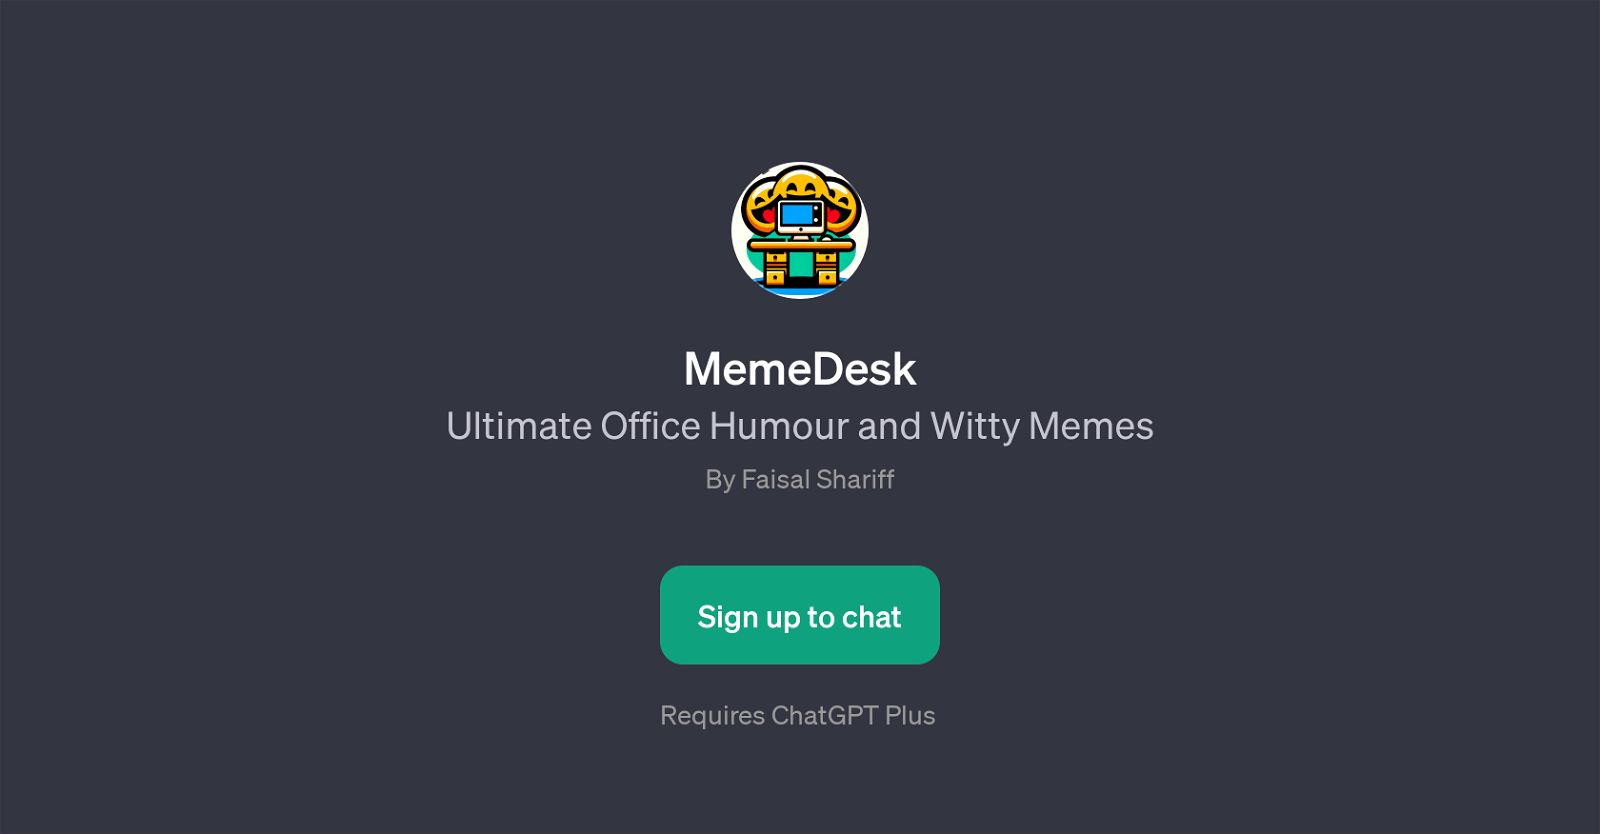 MemeDesk website